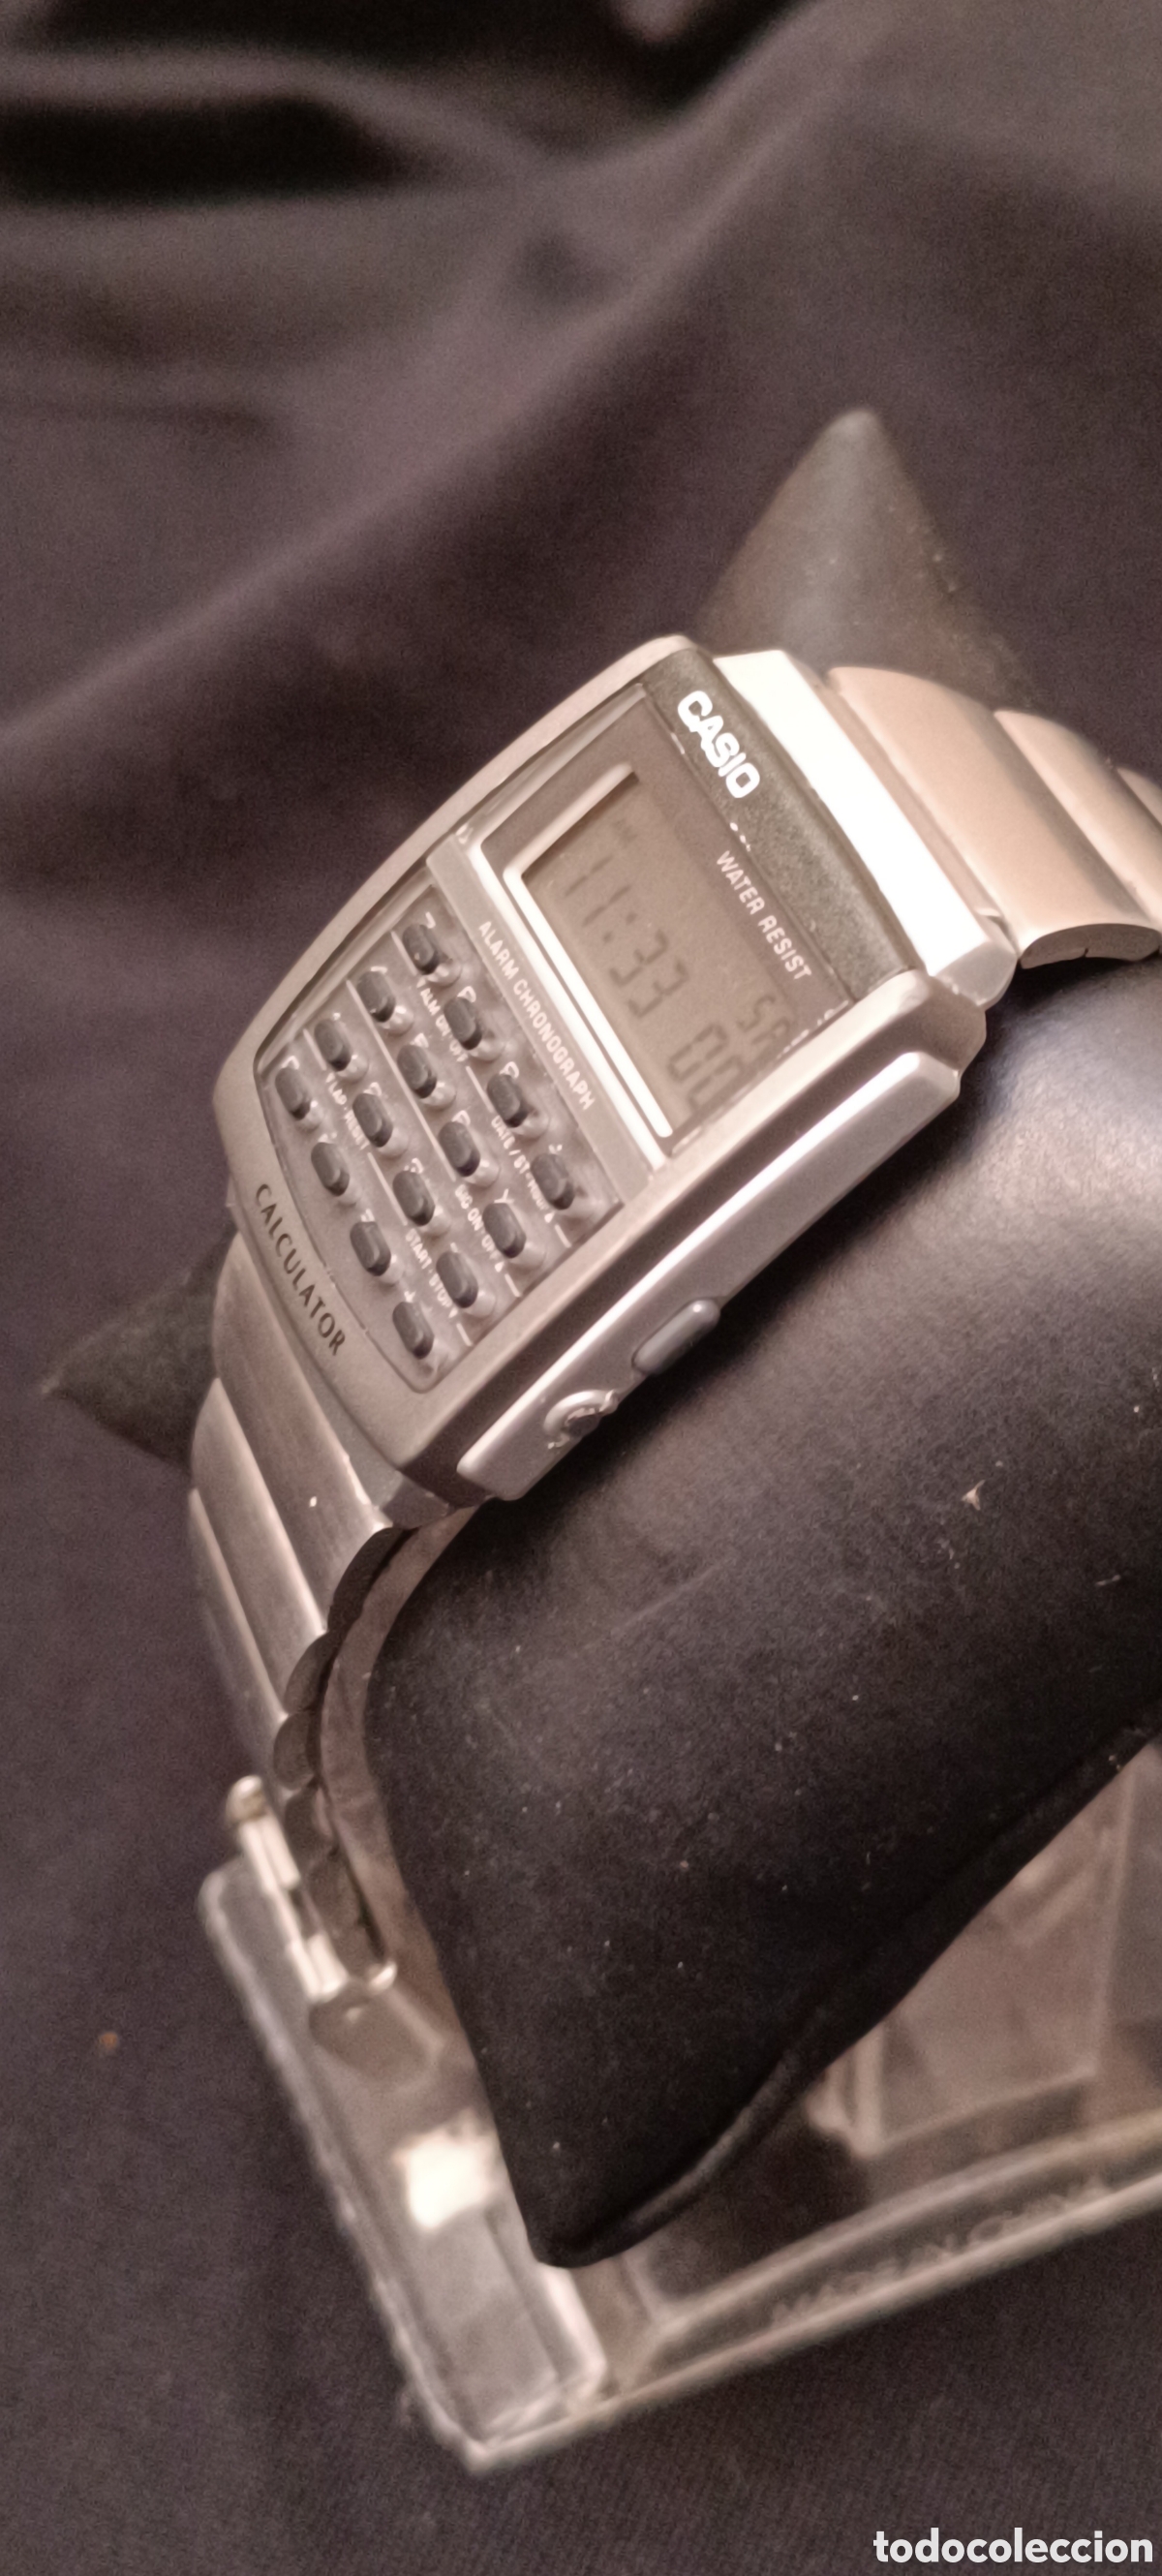 vintage raro reloj casio calculadora - Compra venta en todocoleccion